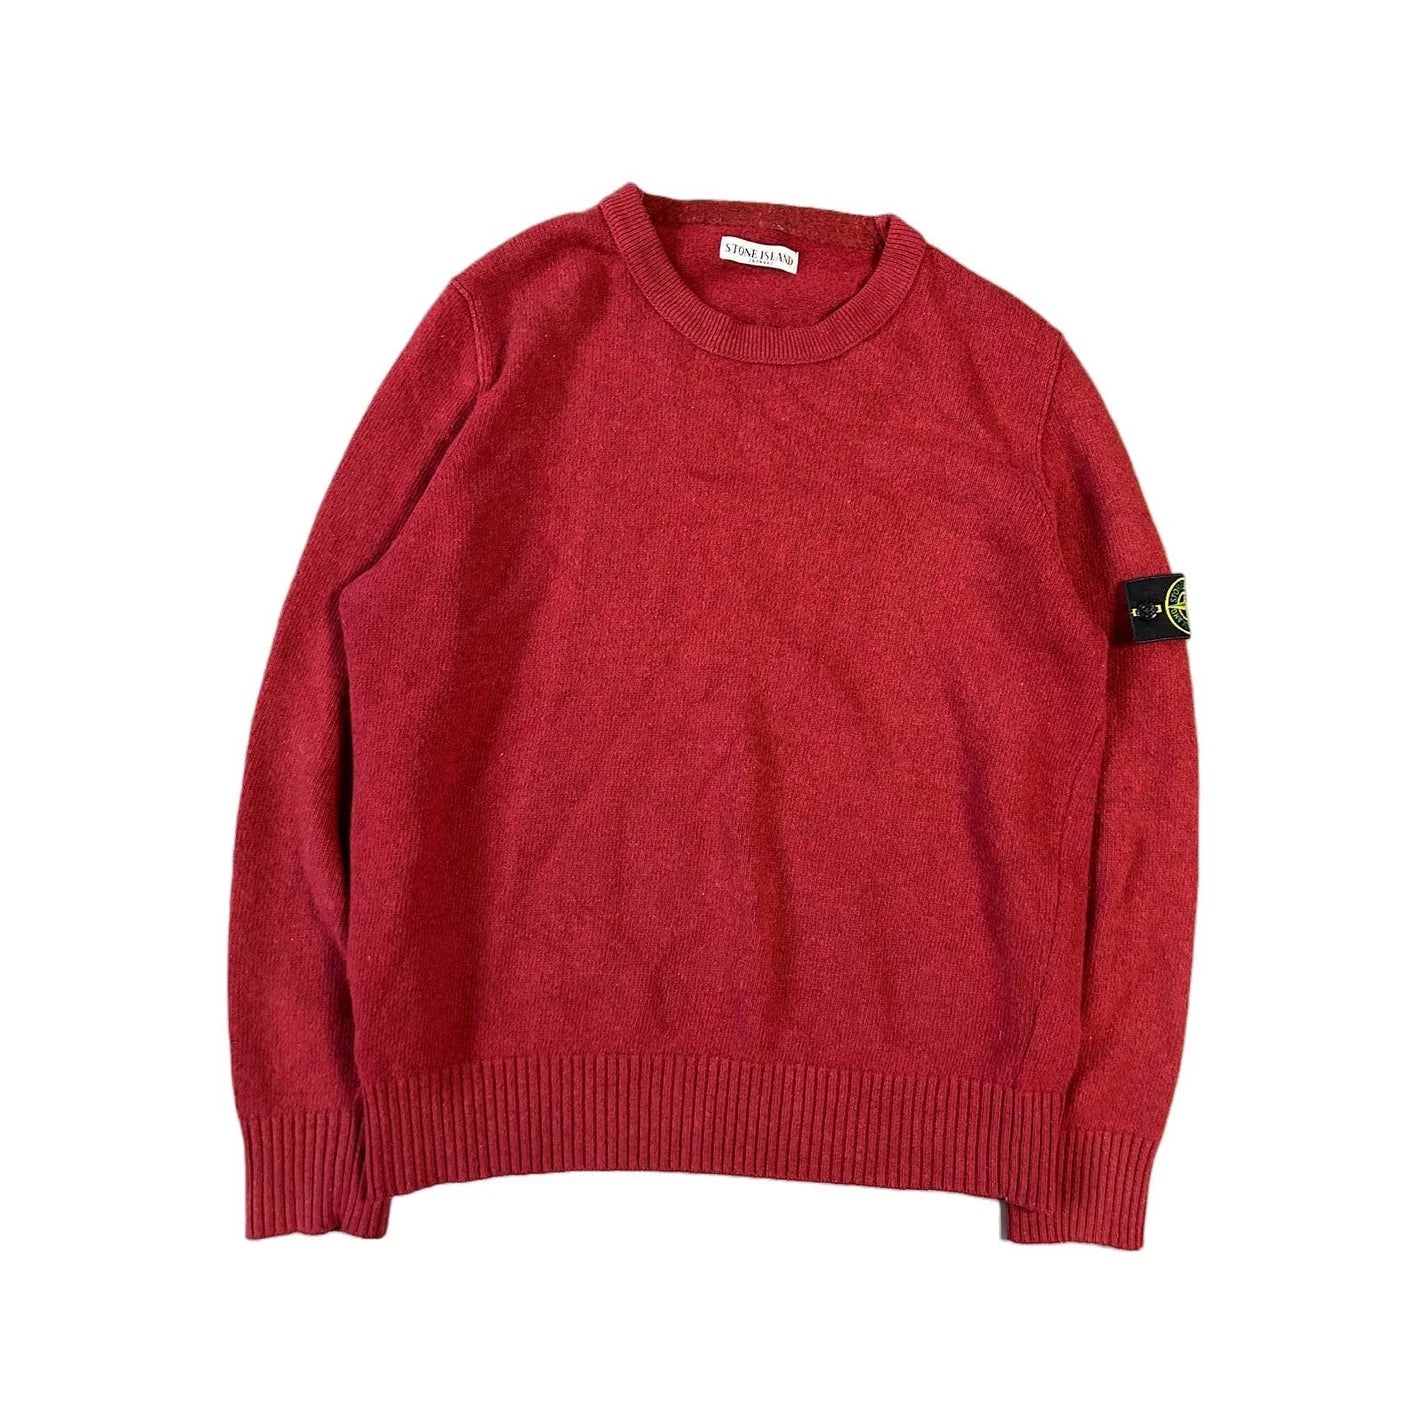 Stone Island Red Sweater Vintage Knit AW 2011 Lodz Polska Front